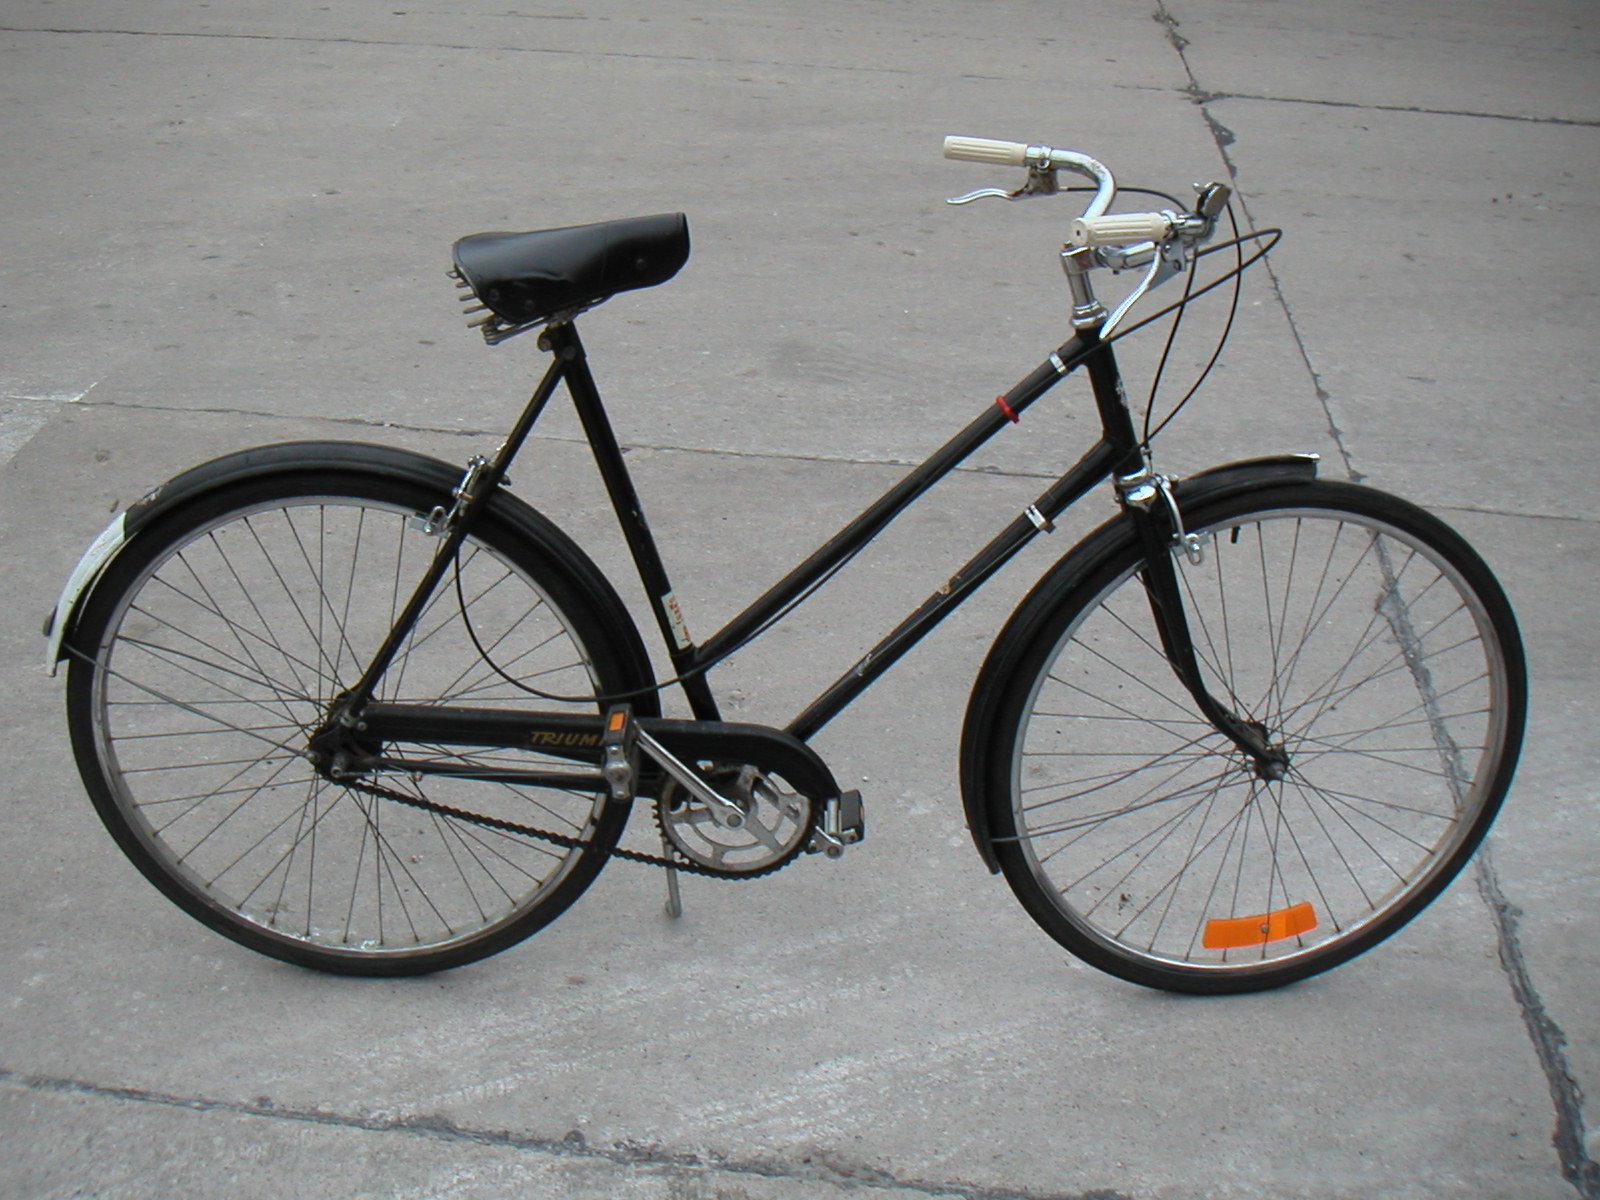 ภาพอธิบายเพิ่มเติมของ แฮนด์ จักรยานสแตนดาร์ด จักรยานวินเทจ แฮนด์หนวด ทรงโค้งเข้าหาตัว ทรงคลาสสิค